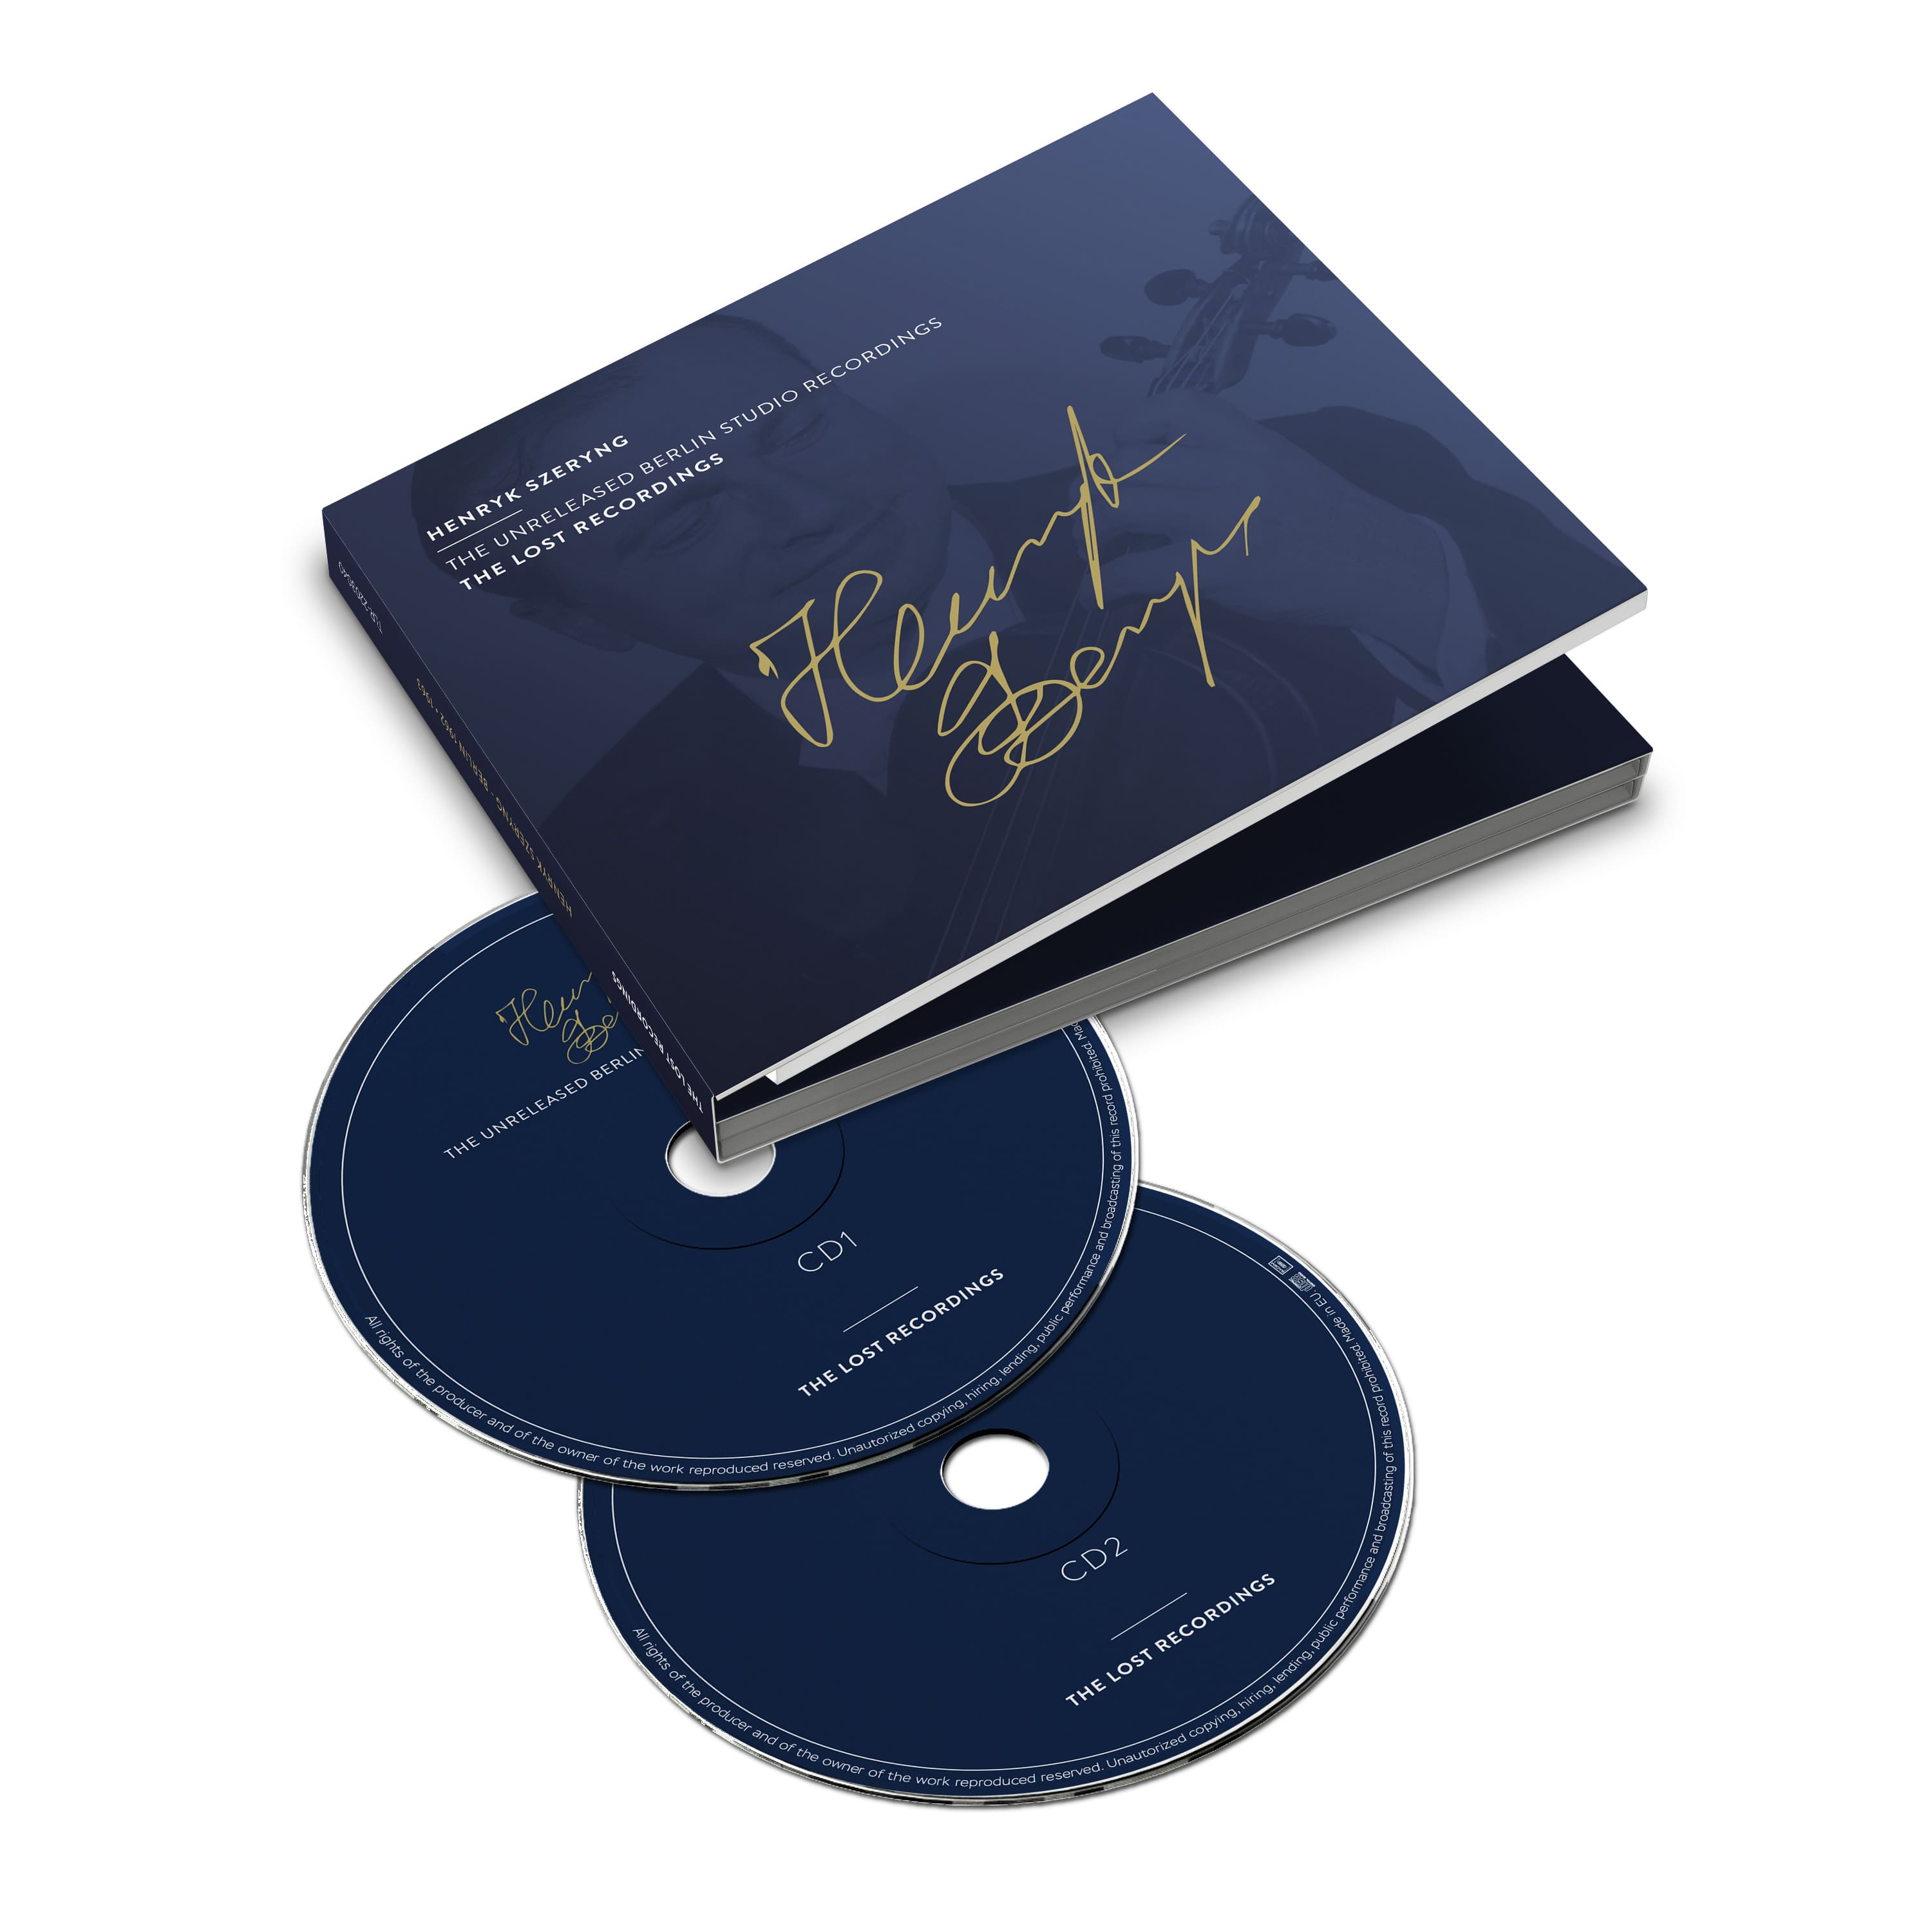 Henryk Szeryng - The unreleased Belin Studio Recordings - Double CD